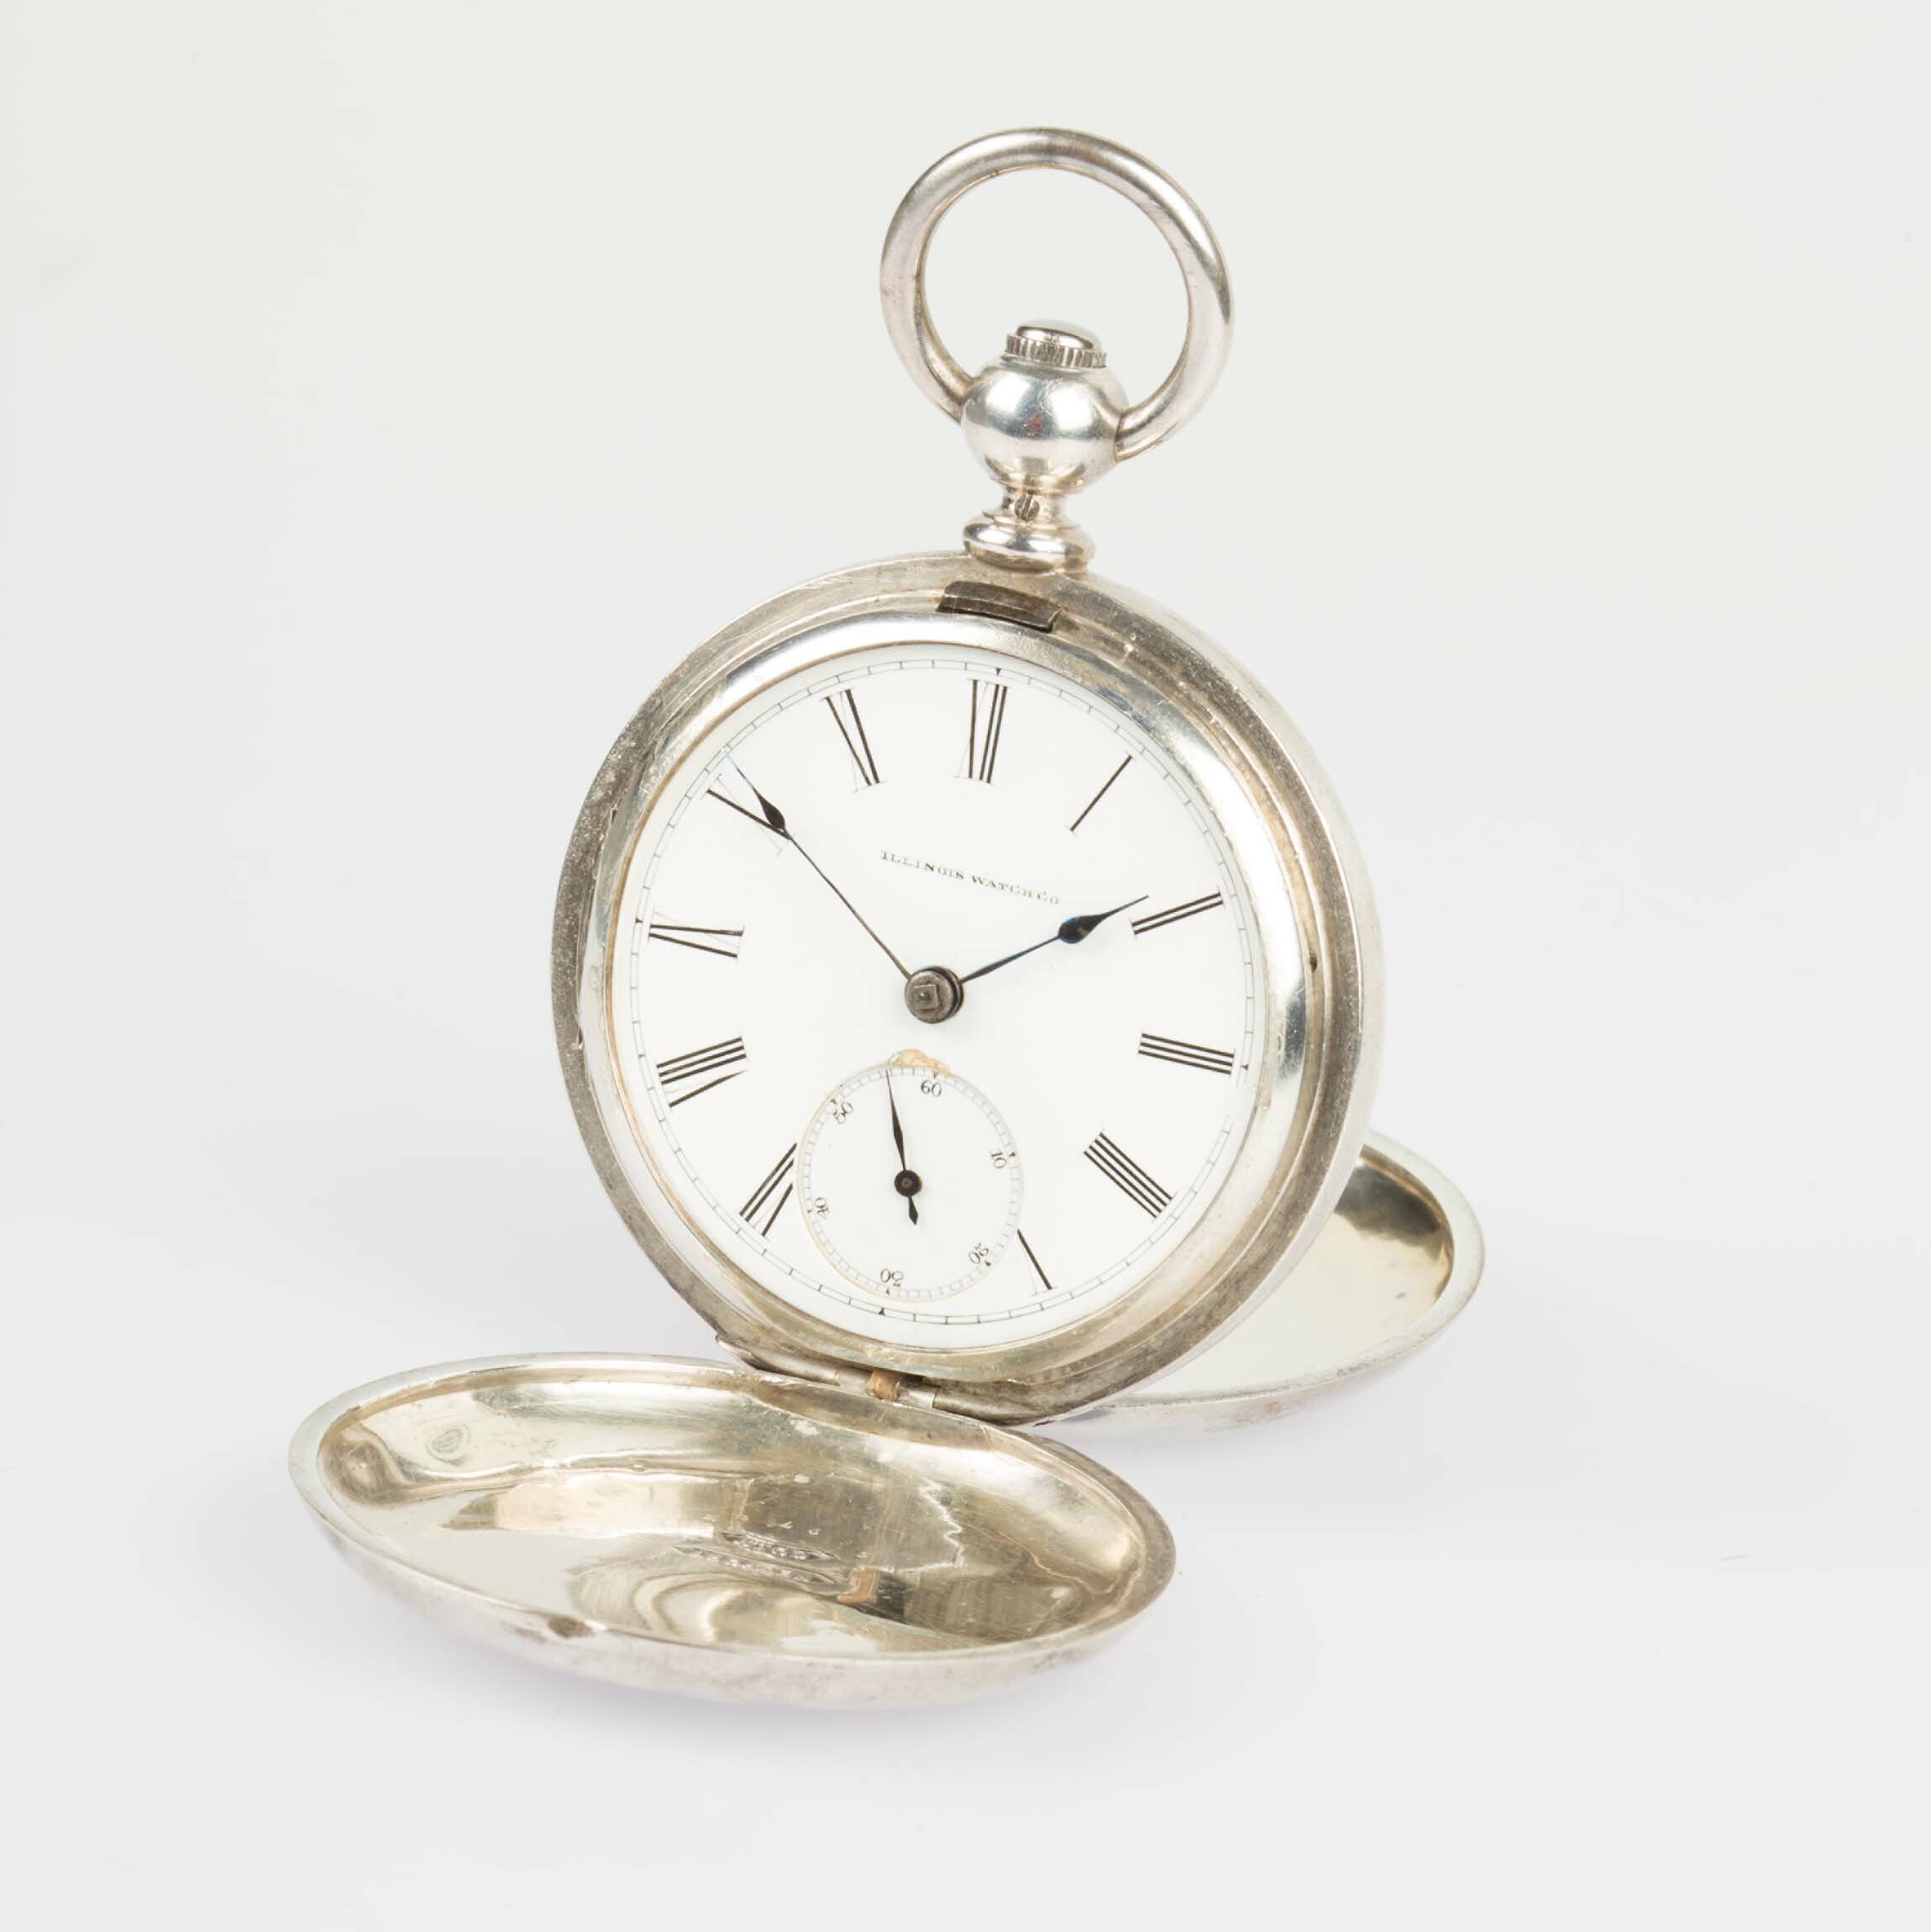 Taschenuhr, Illinois Watch Co., Springfield (USA), um 1880 (Deutsches Uhrenmuseum CC BY-SA)